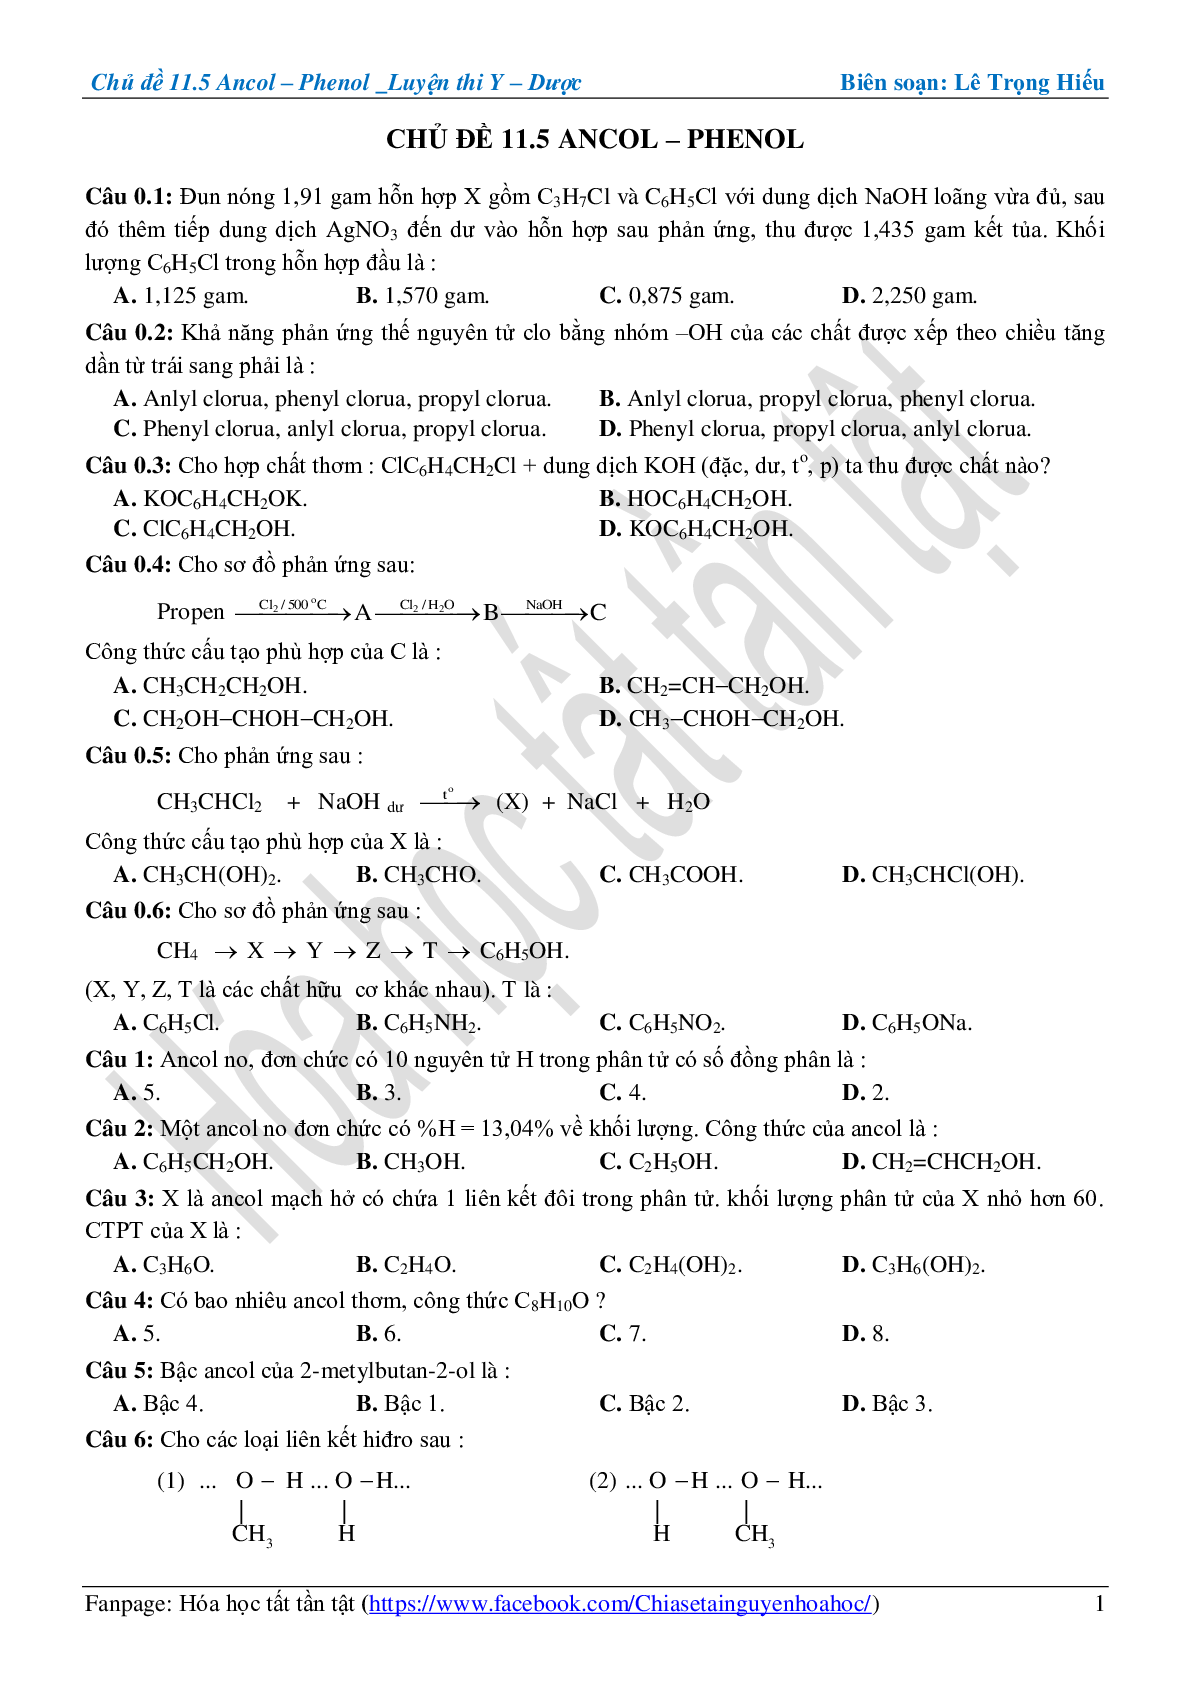 Bài tập về ancol-phenol cơ bản, nâng cao (trang 1)